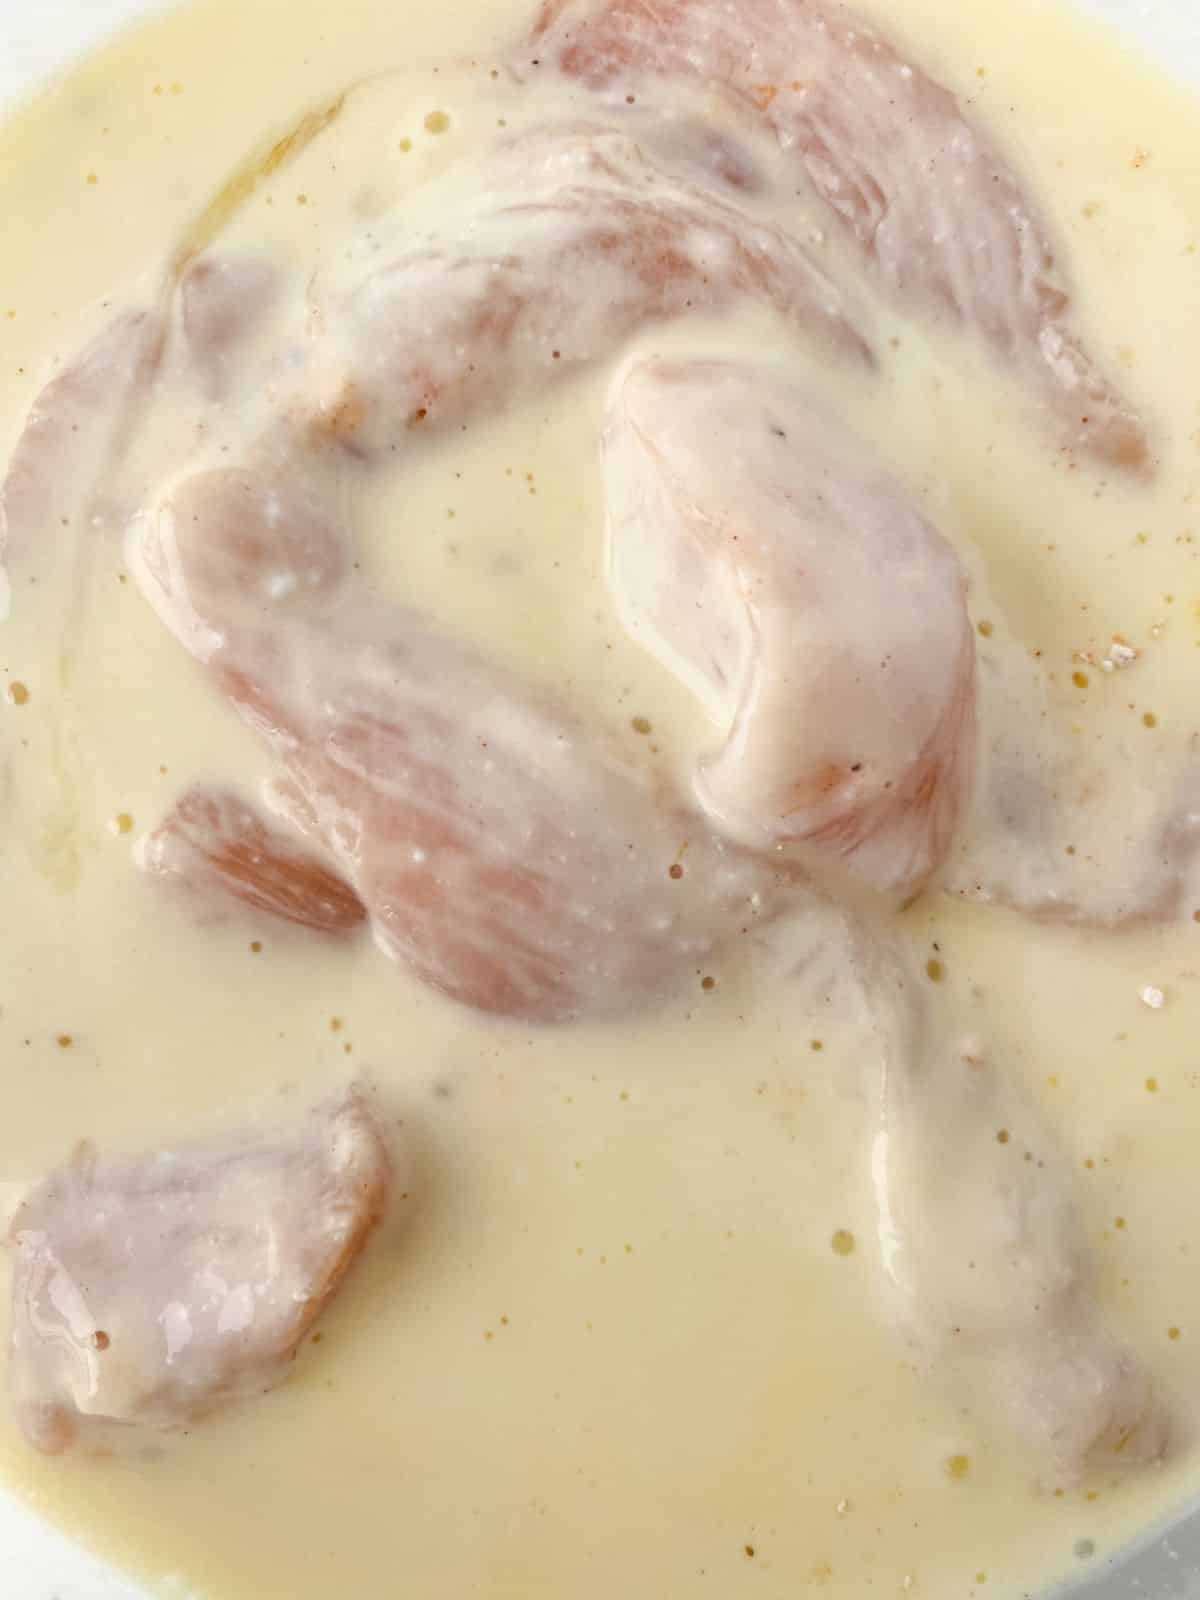 chicken in bowl of milk